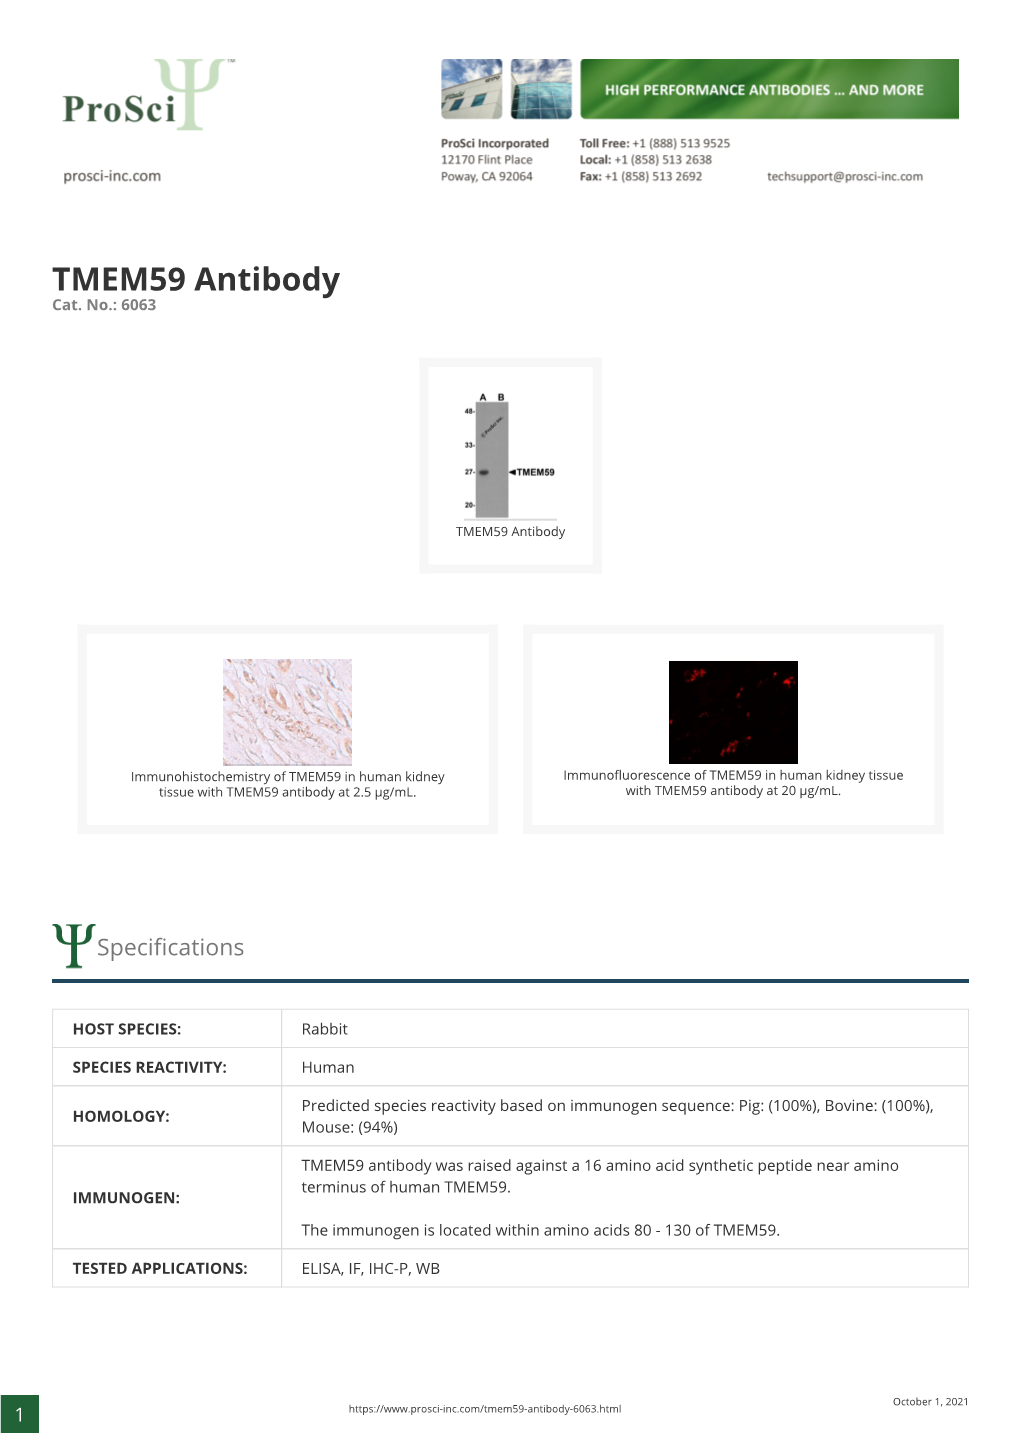 TMEM59 Antibody Cat